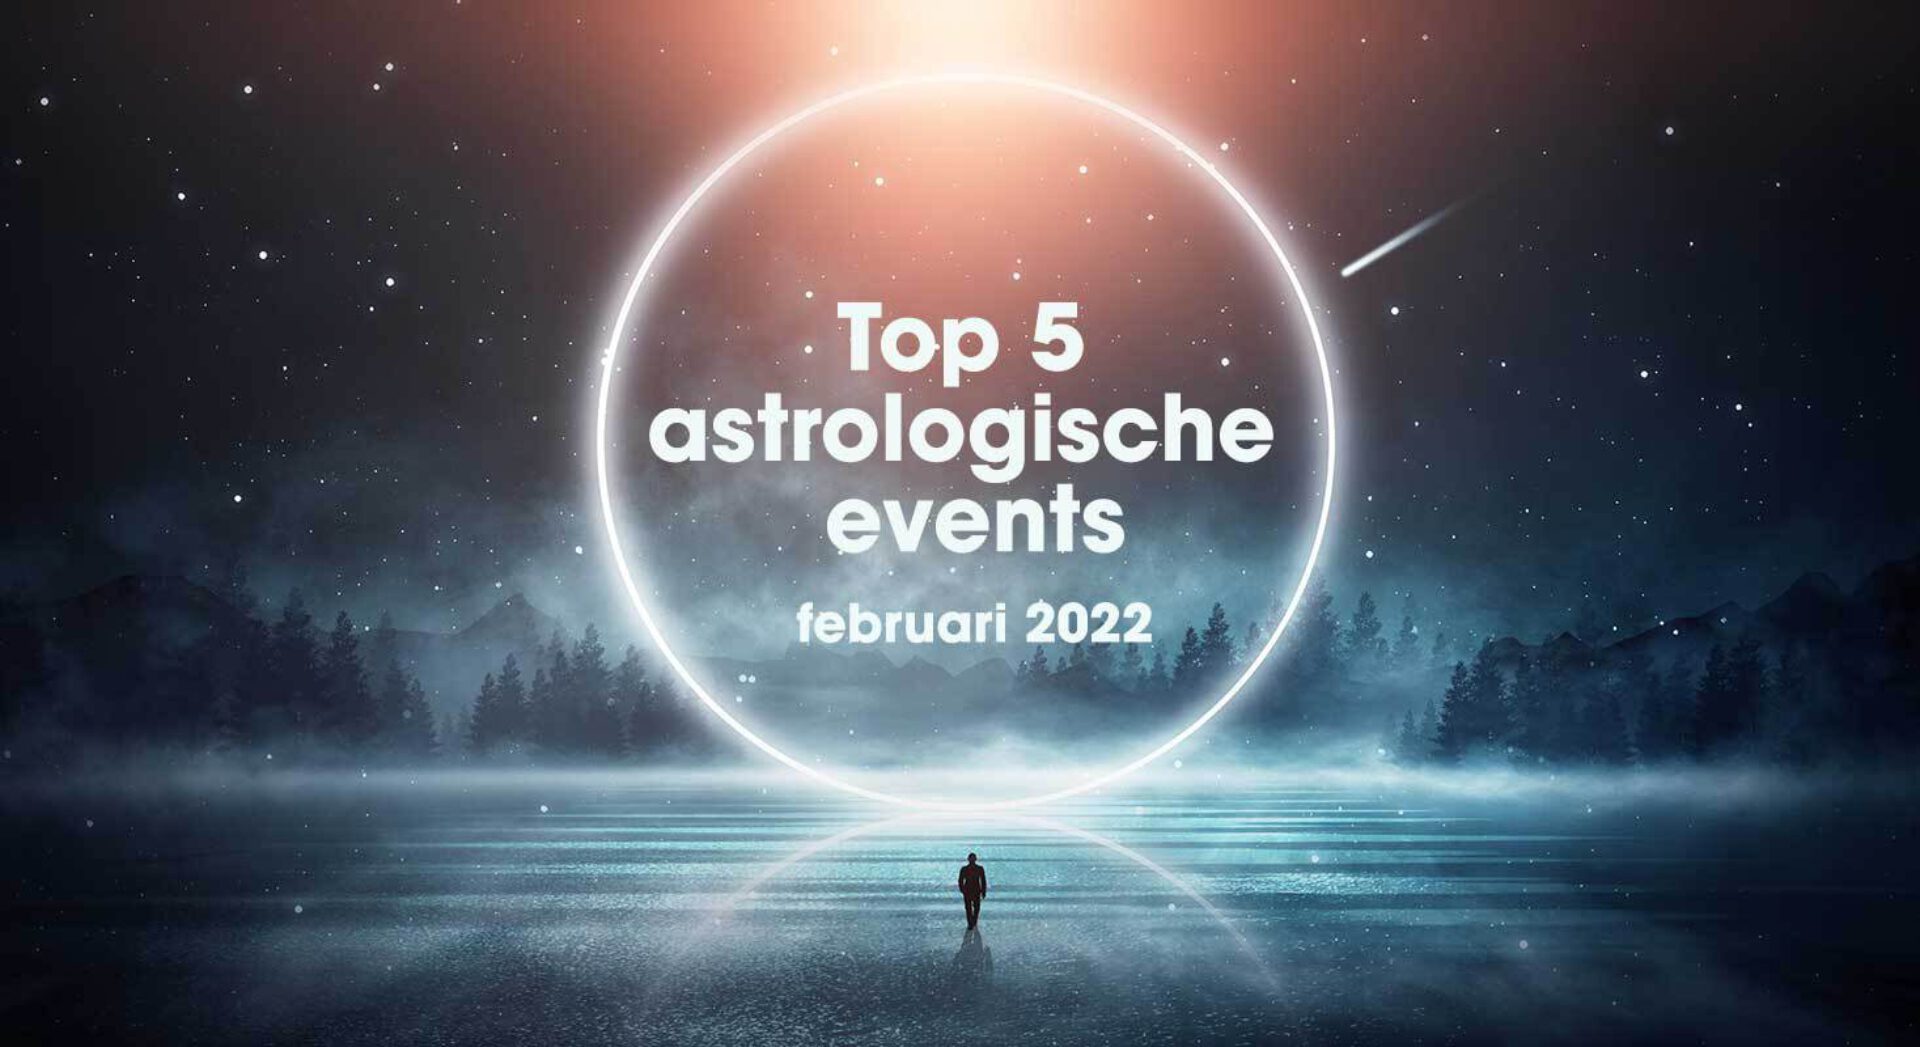 De top 5 astrologische gebeurtenissen in februari 2022